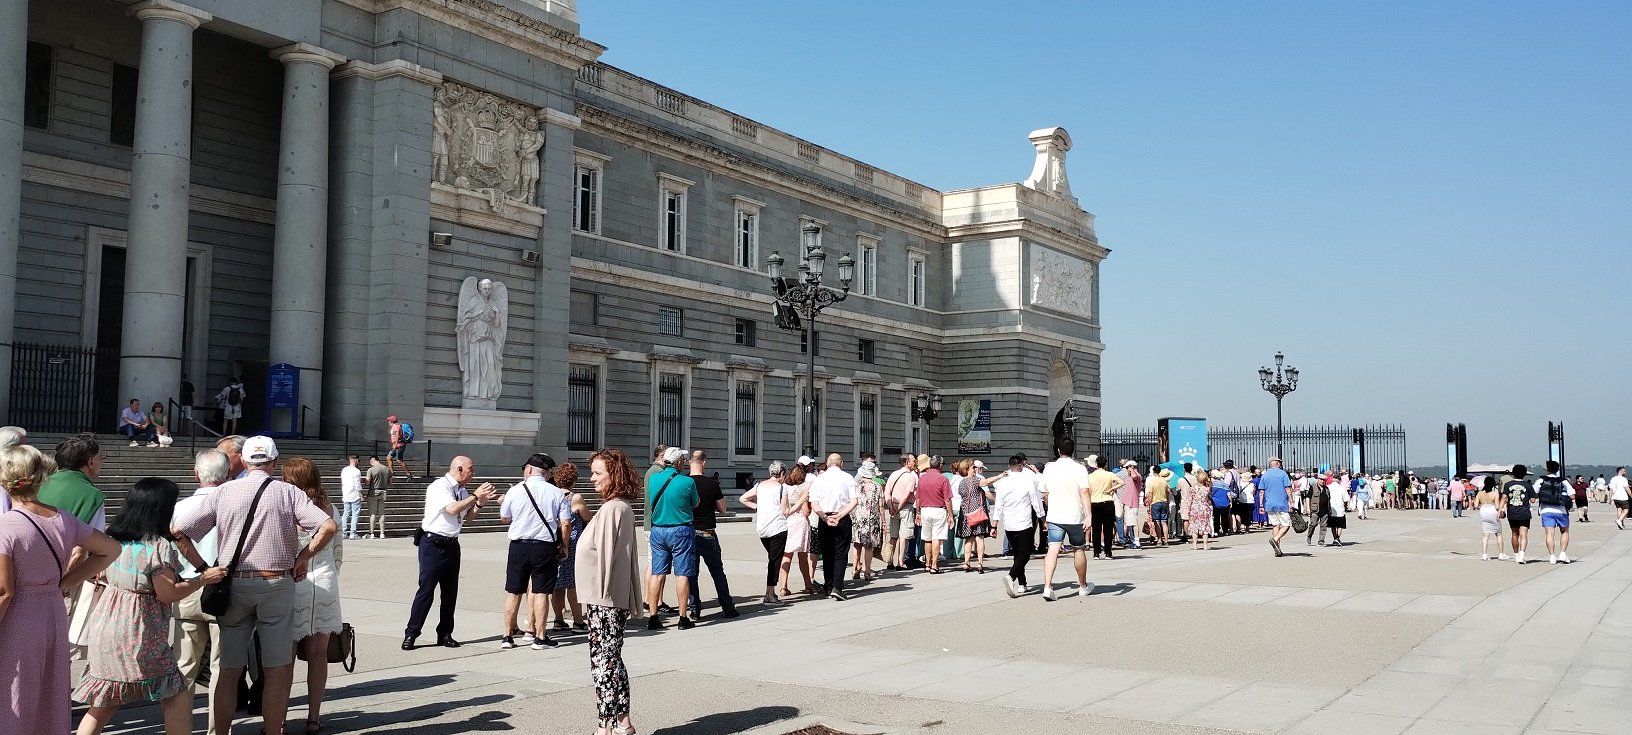 Hatalmas tömeg várakozott a belépésre a Királyi Gyűjtemények Galériájának megnyitásakor - fotó: Marton Ildikó/KultúrExpress